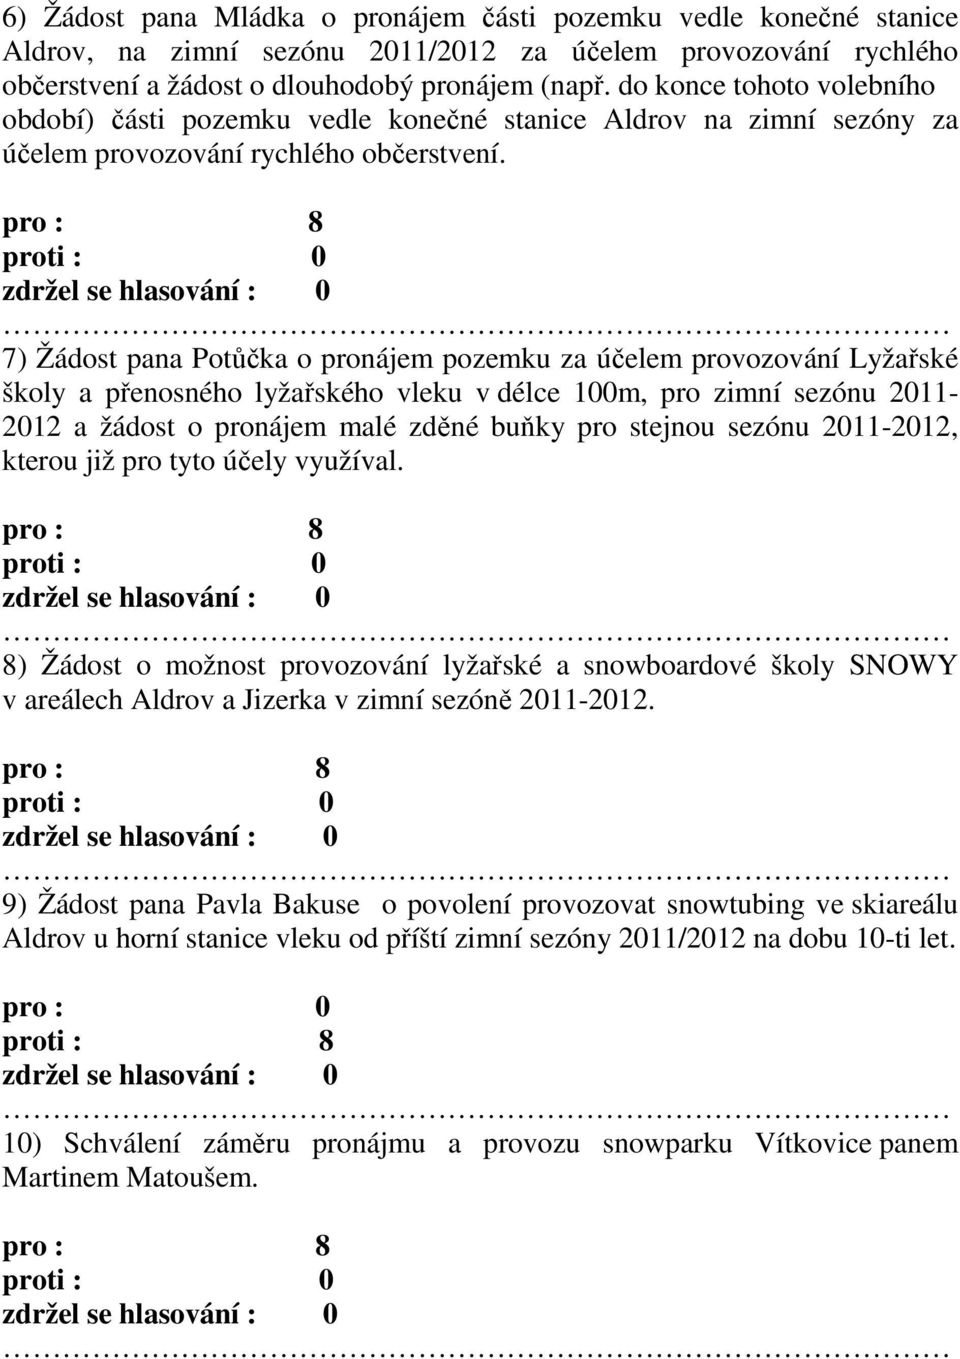 7) Žádost pana Potůčka o pronájem pozemku za účelem provozování Lyžařské školy a přenosného lyžařského vleku v délce 100m, pro zimní sezónu 2011-2012 a žádost o pronájem malé zděné buňky pro stejnou